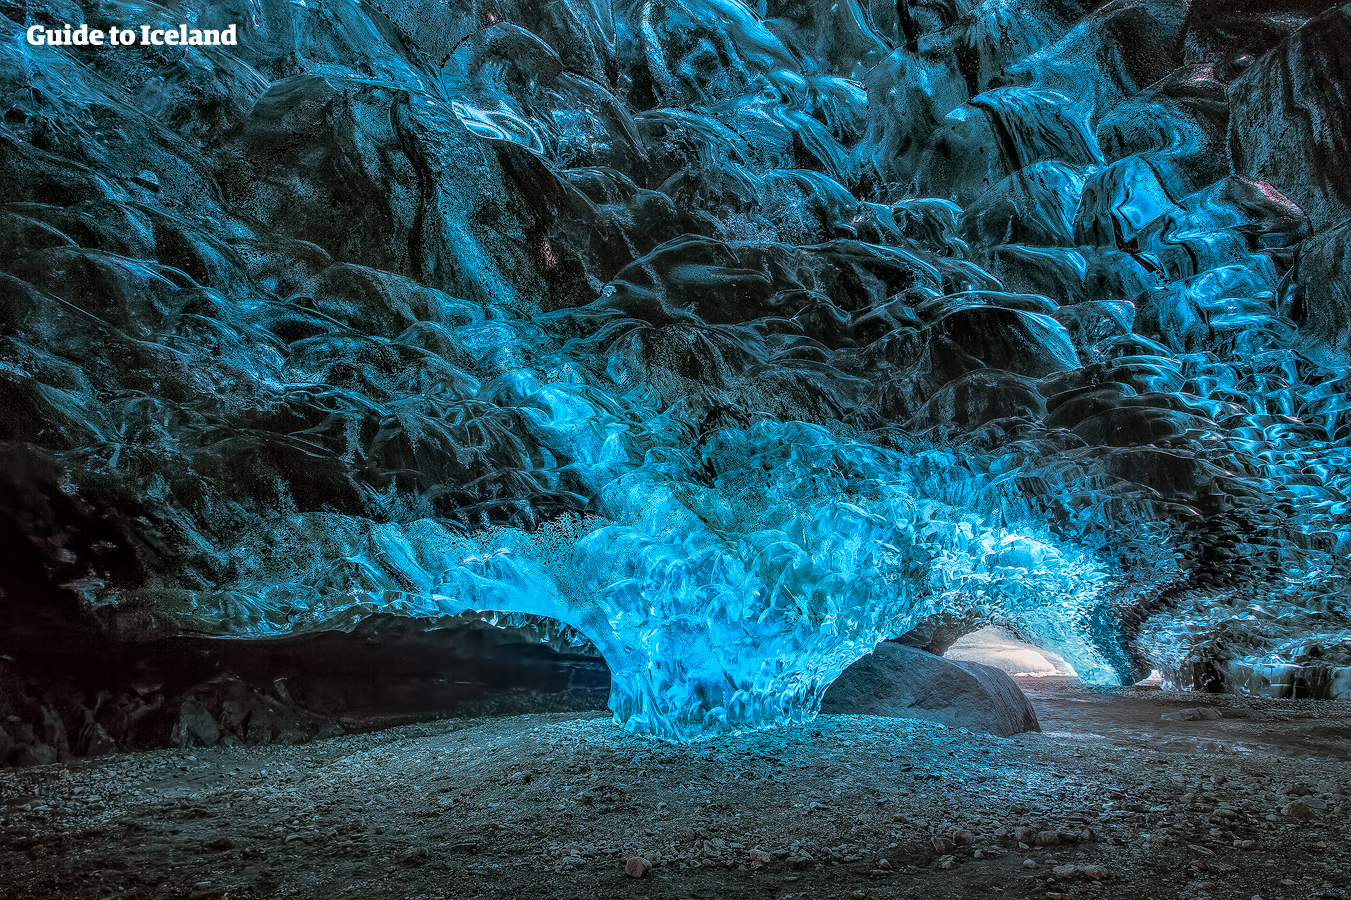 Las texturas de las cuevas de hielo pueden explicarse mediante procesos científicos (tu guía te explicará todo).